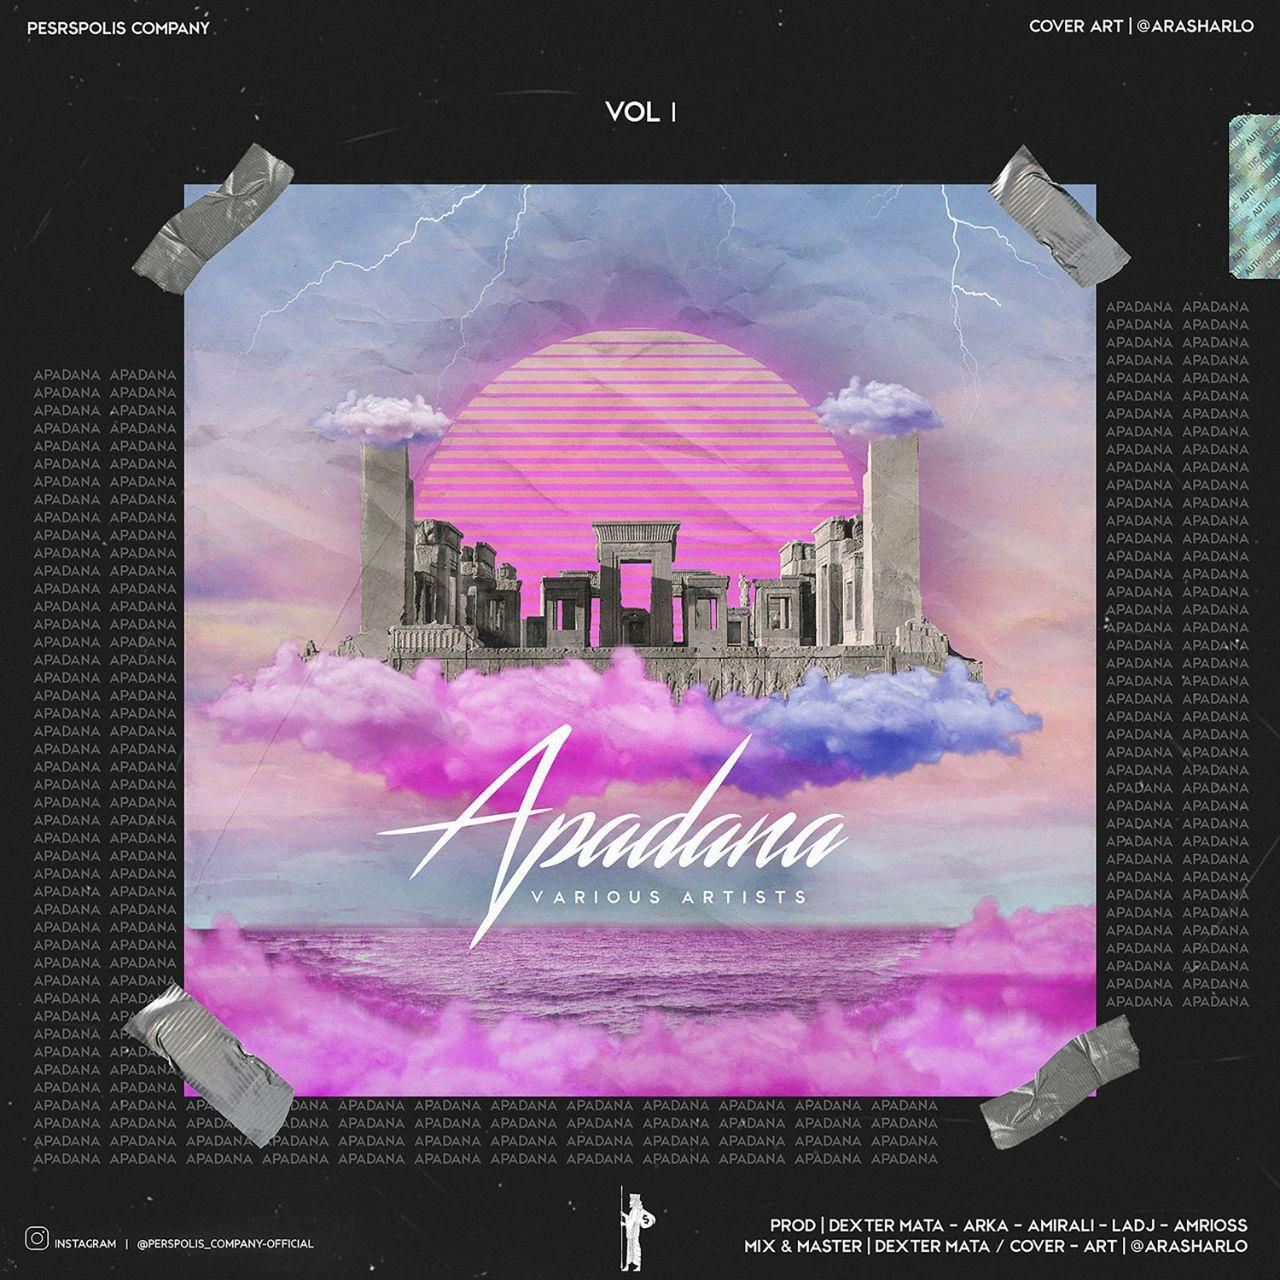 Various Artists - Apadana Vol 1